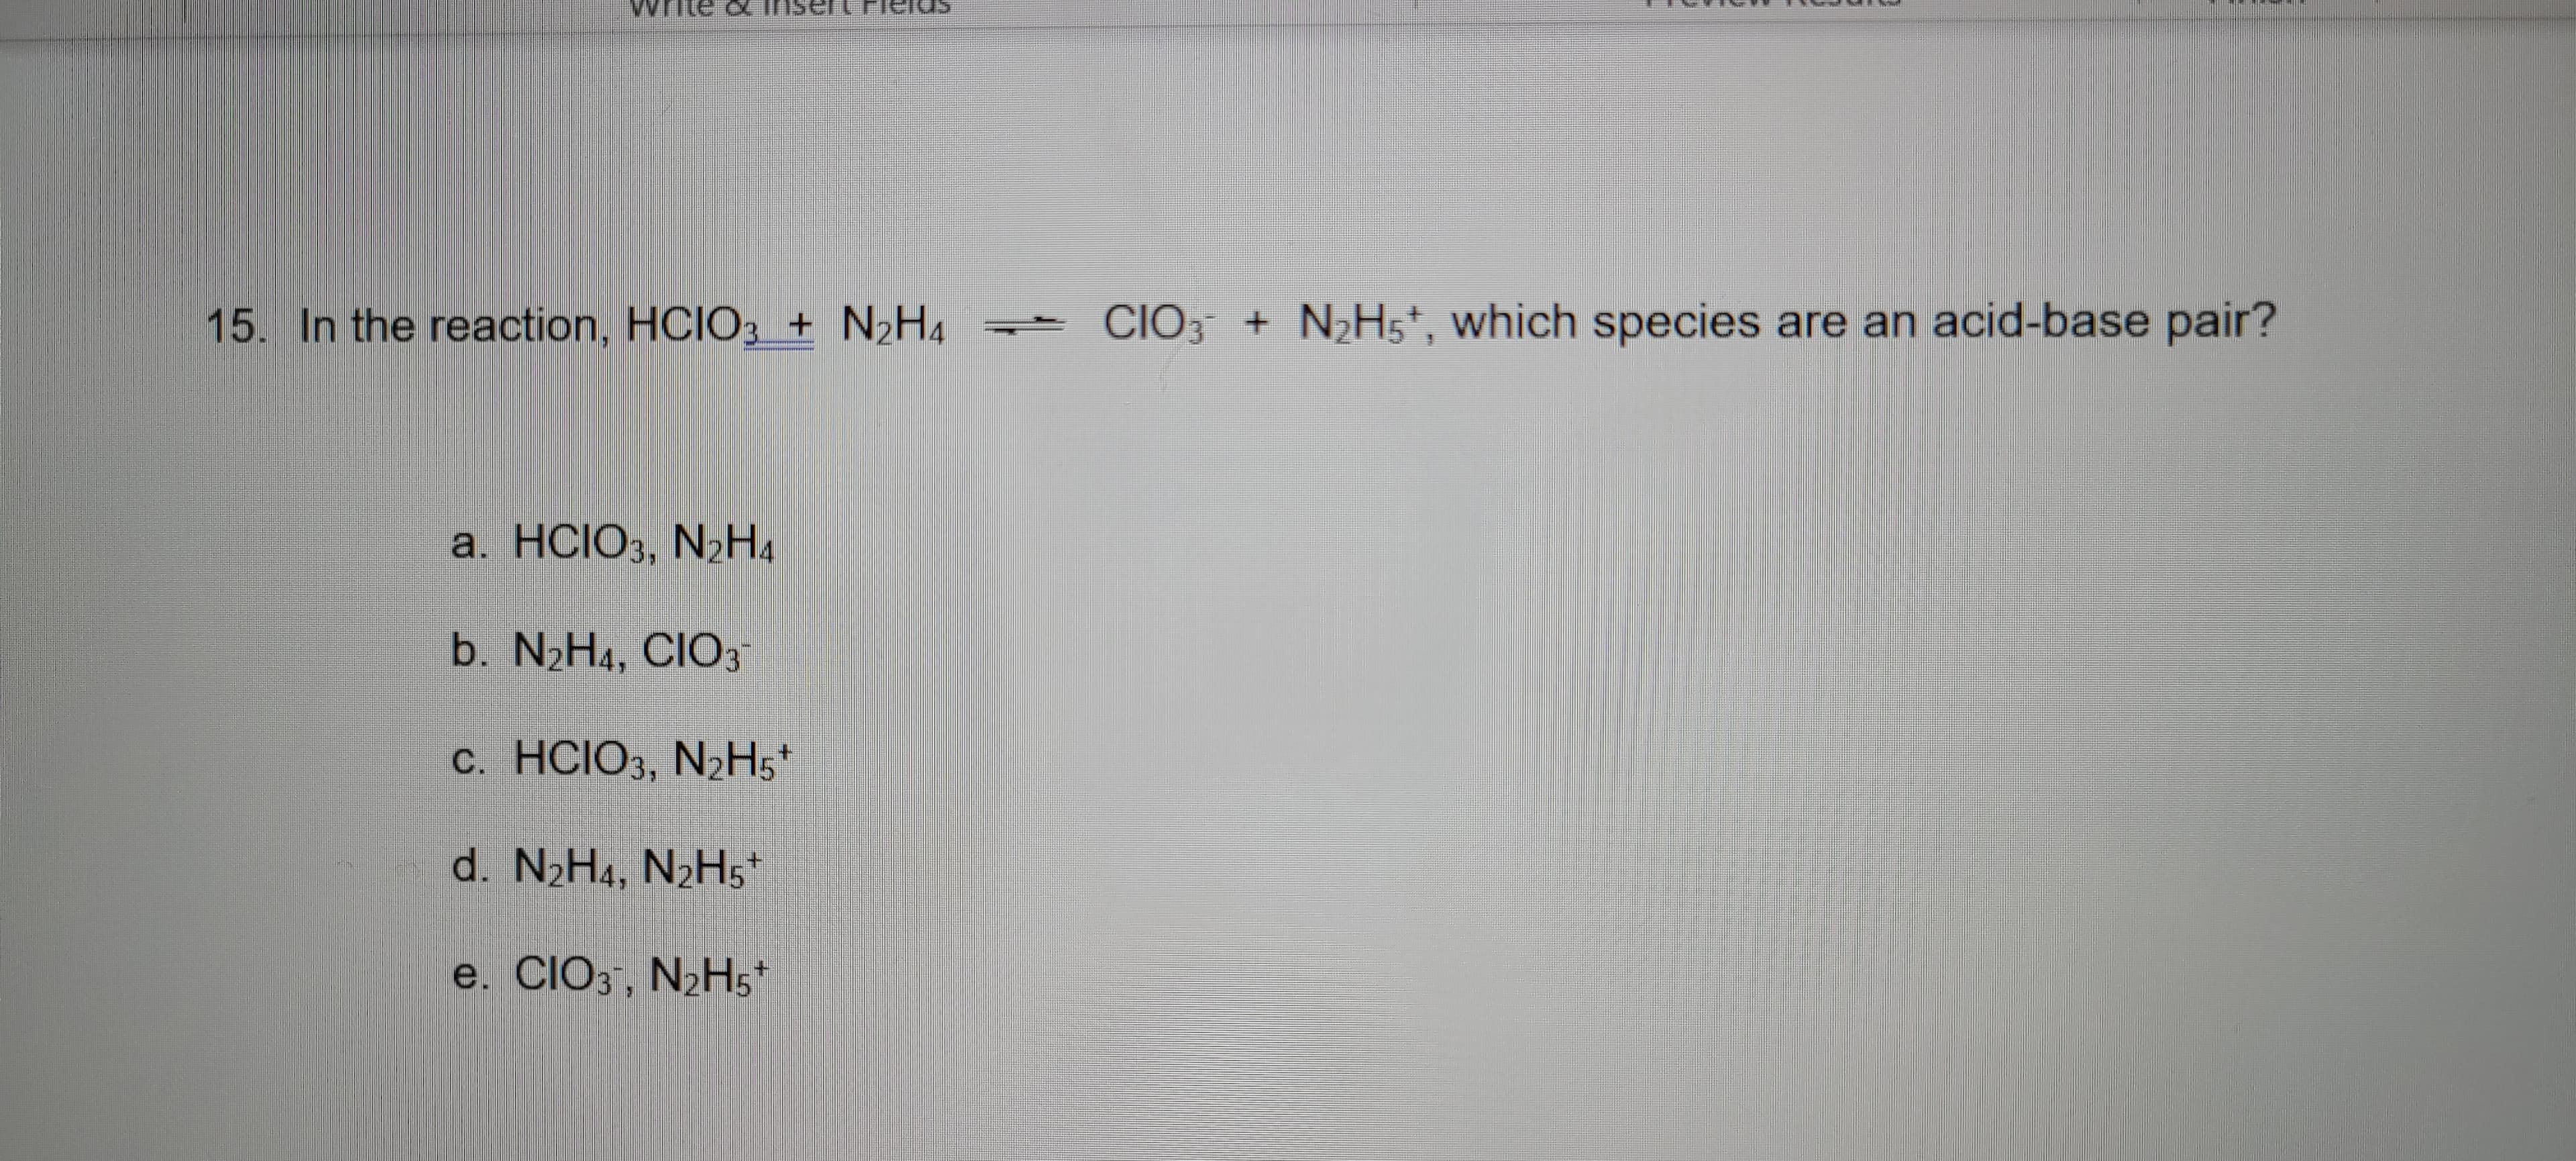 15. In the reaction, HCIO, + N2H.
CIO, + NH,', which species are an acid-base pair?
a. HCIO,, N»H.
b. N2H1, CIO,
c. HCIO, N;H;
d. N,H., N>Hs¨
e. CIO,, N>H;
